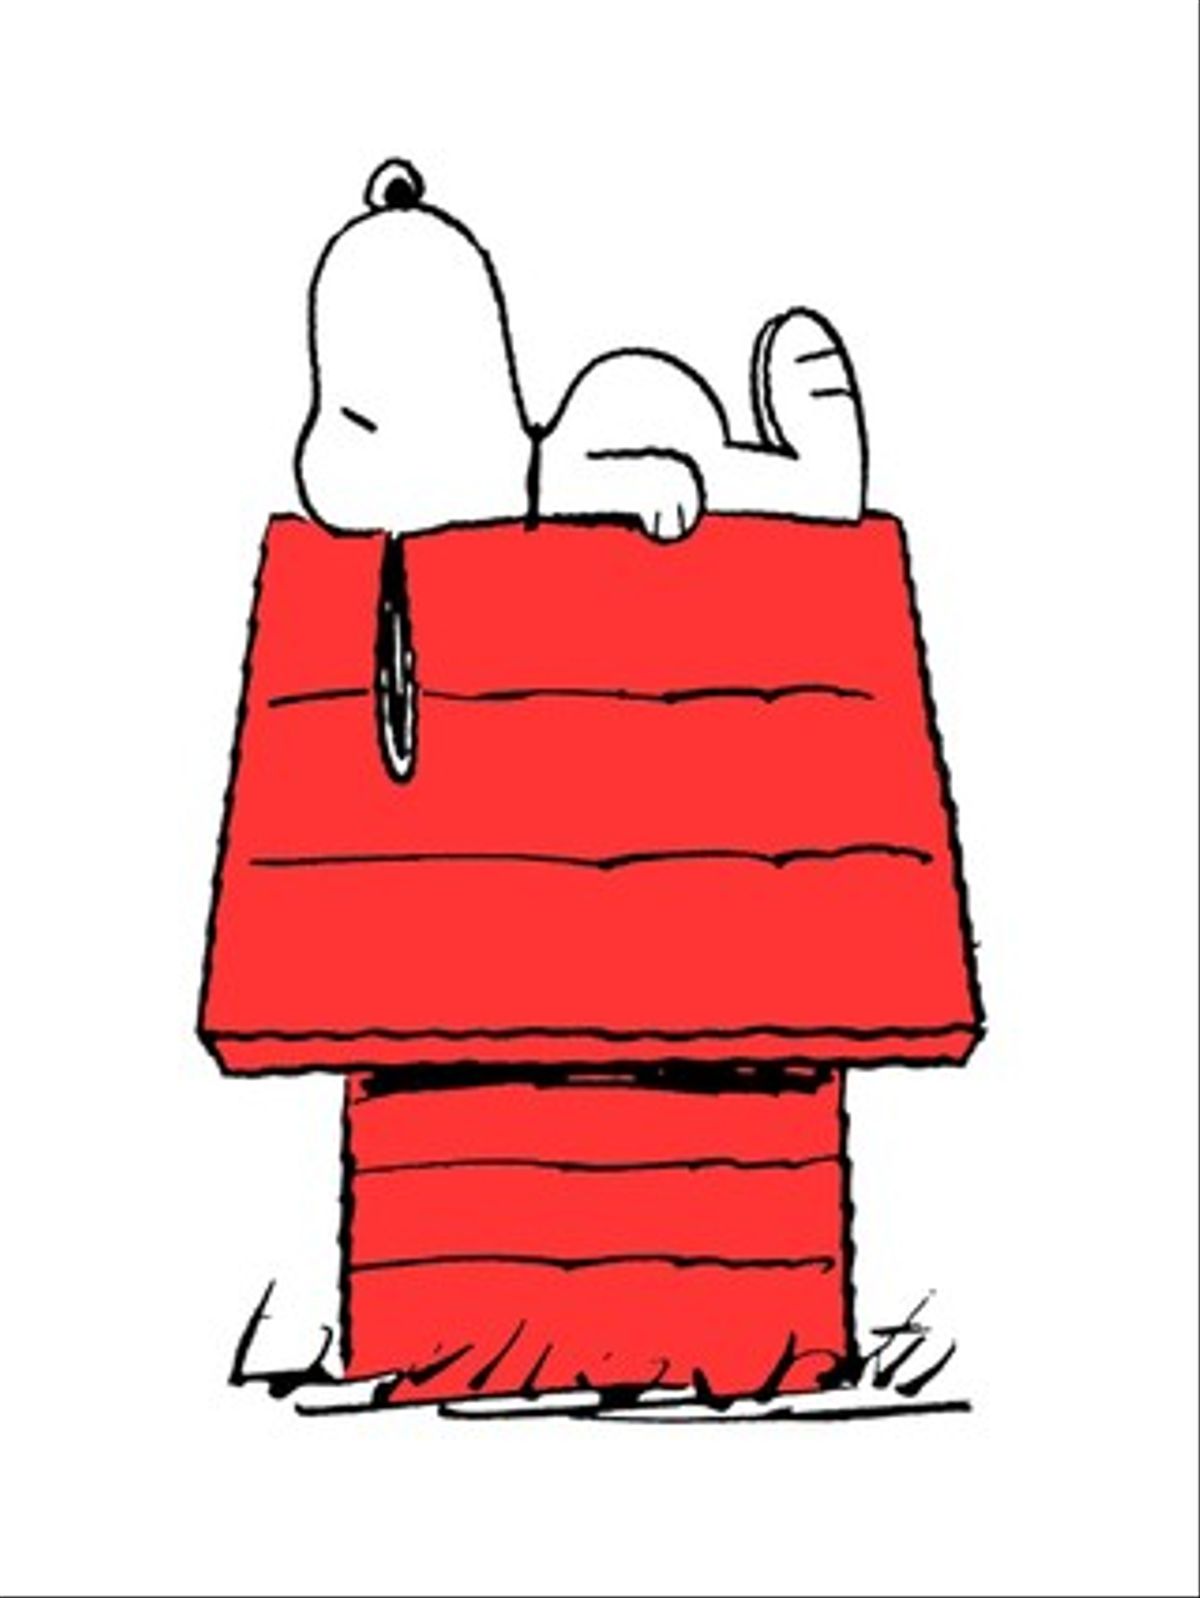 Snoopy sobre su casa de madera roja